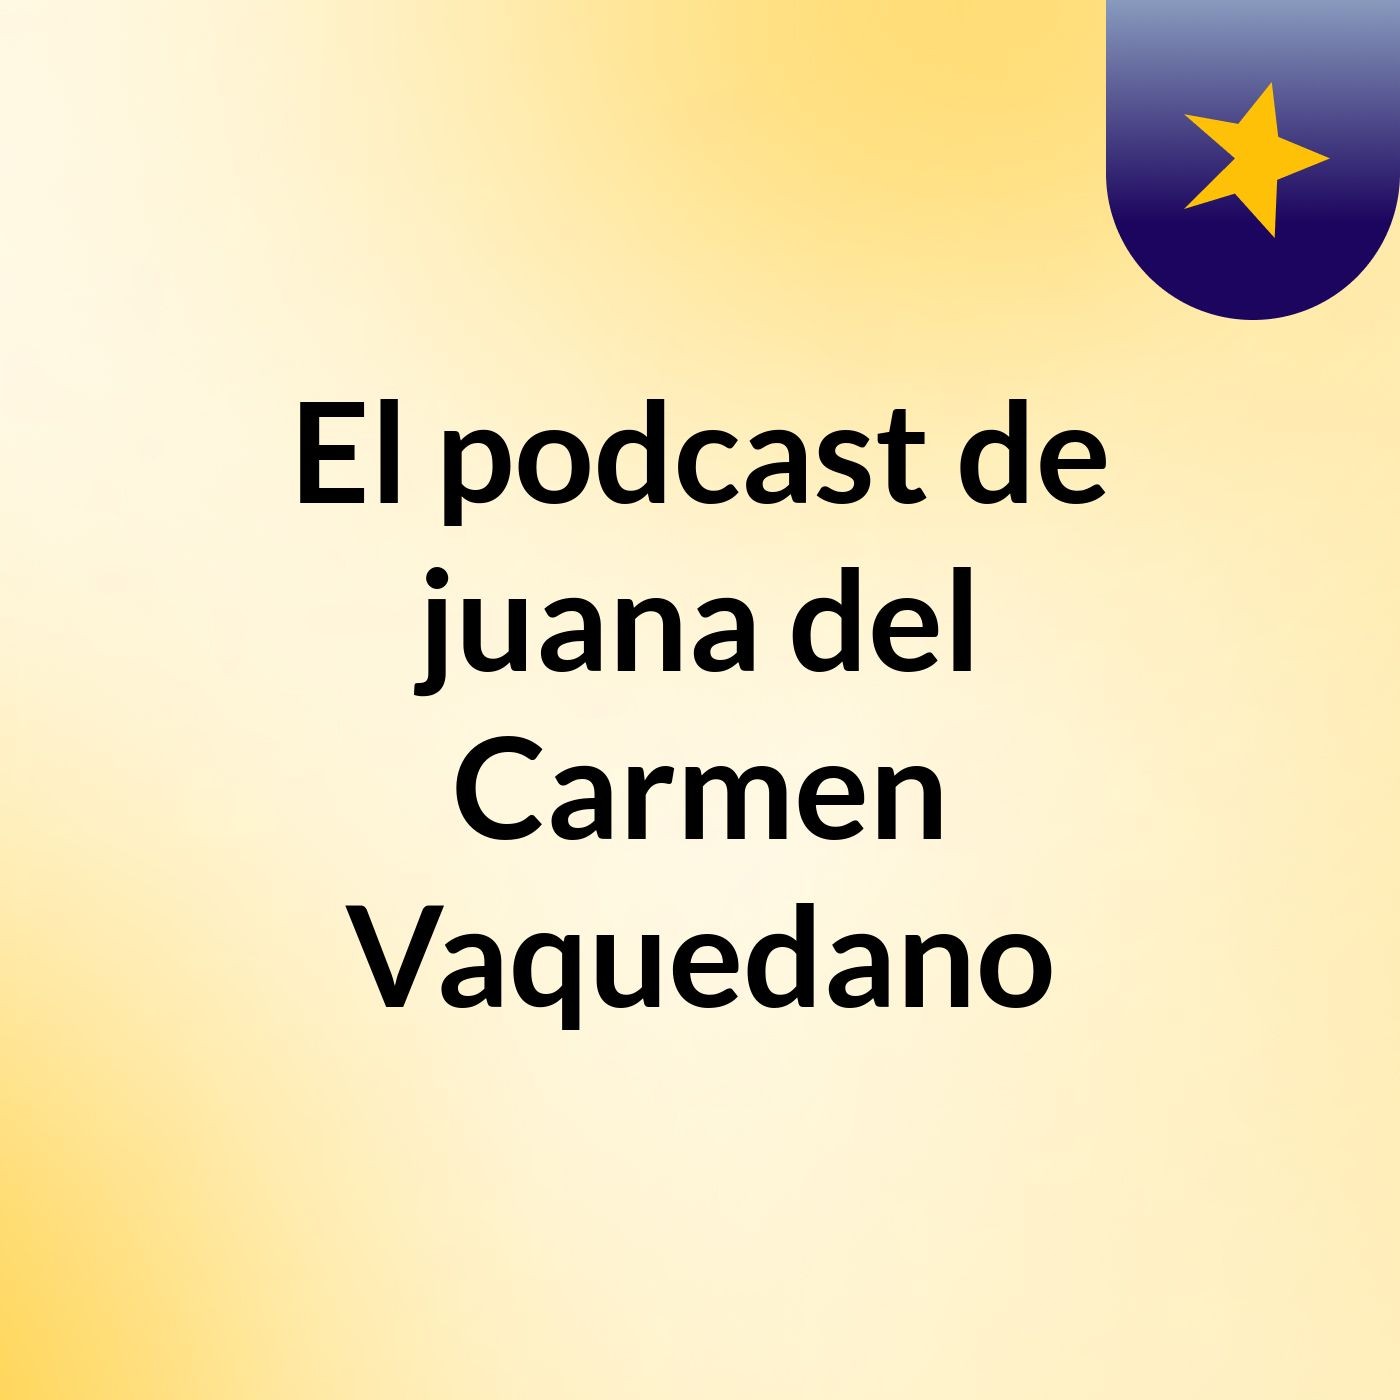 El podcast de juana del Carmen Vaquedano